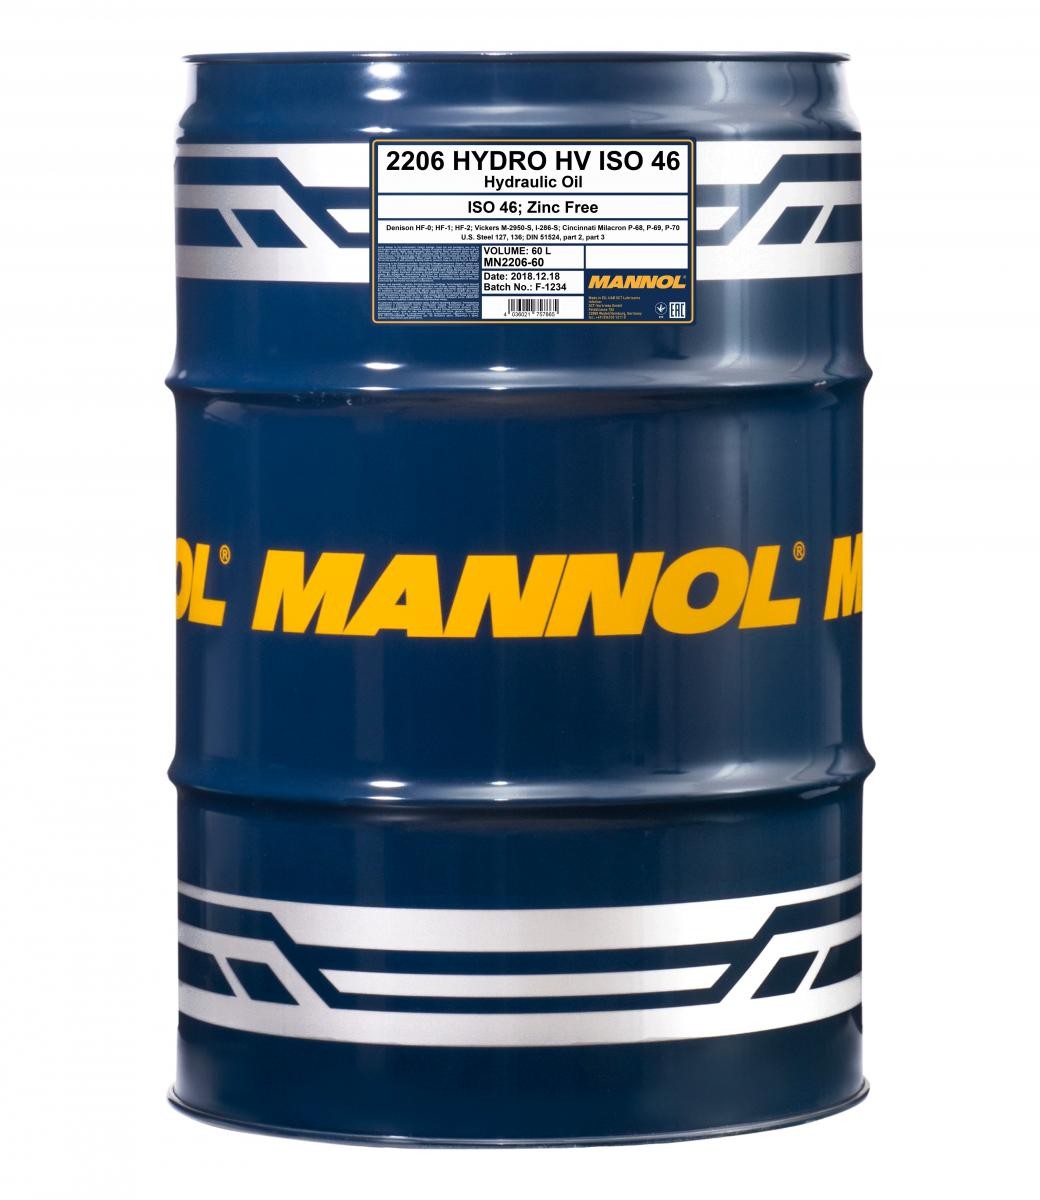 MANNOL Hydro HV ISO 46, Zinc Free Central Hydraulic Oil MN2206-60 buy